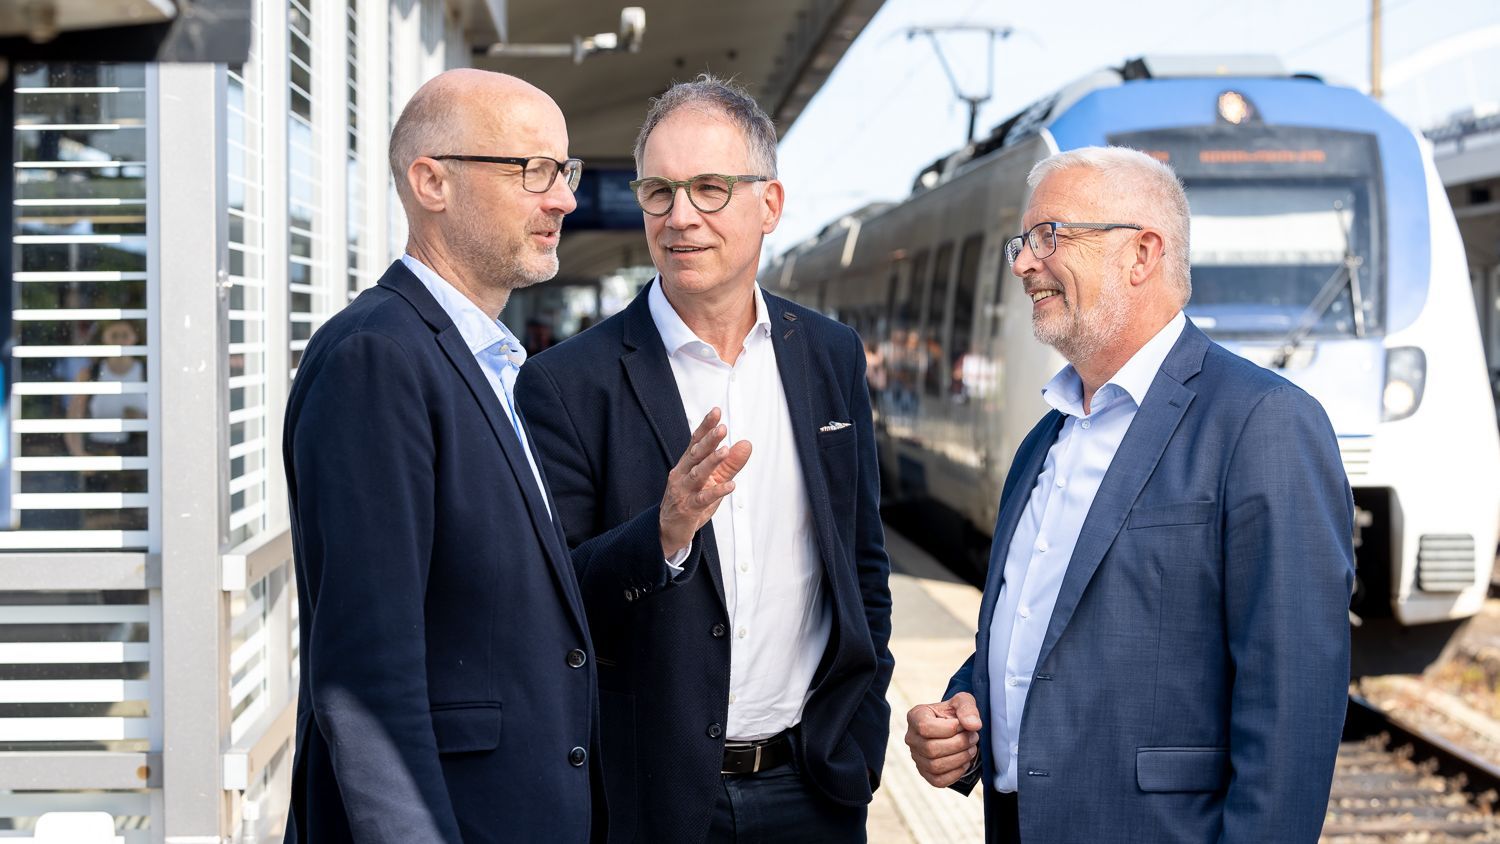 Wir sehen, wie Jens Schäfer, Norbert Reinkober und Manfred Gutfrucht zusammen auf einem Bahnsteig stehend miteinander sprechen.